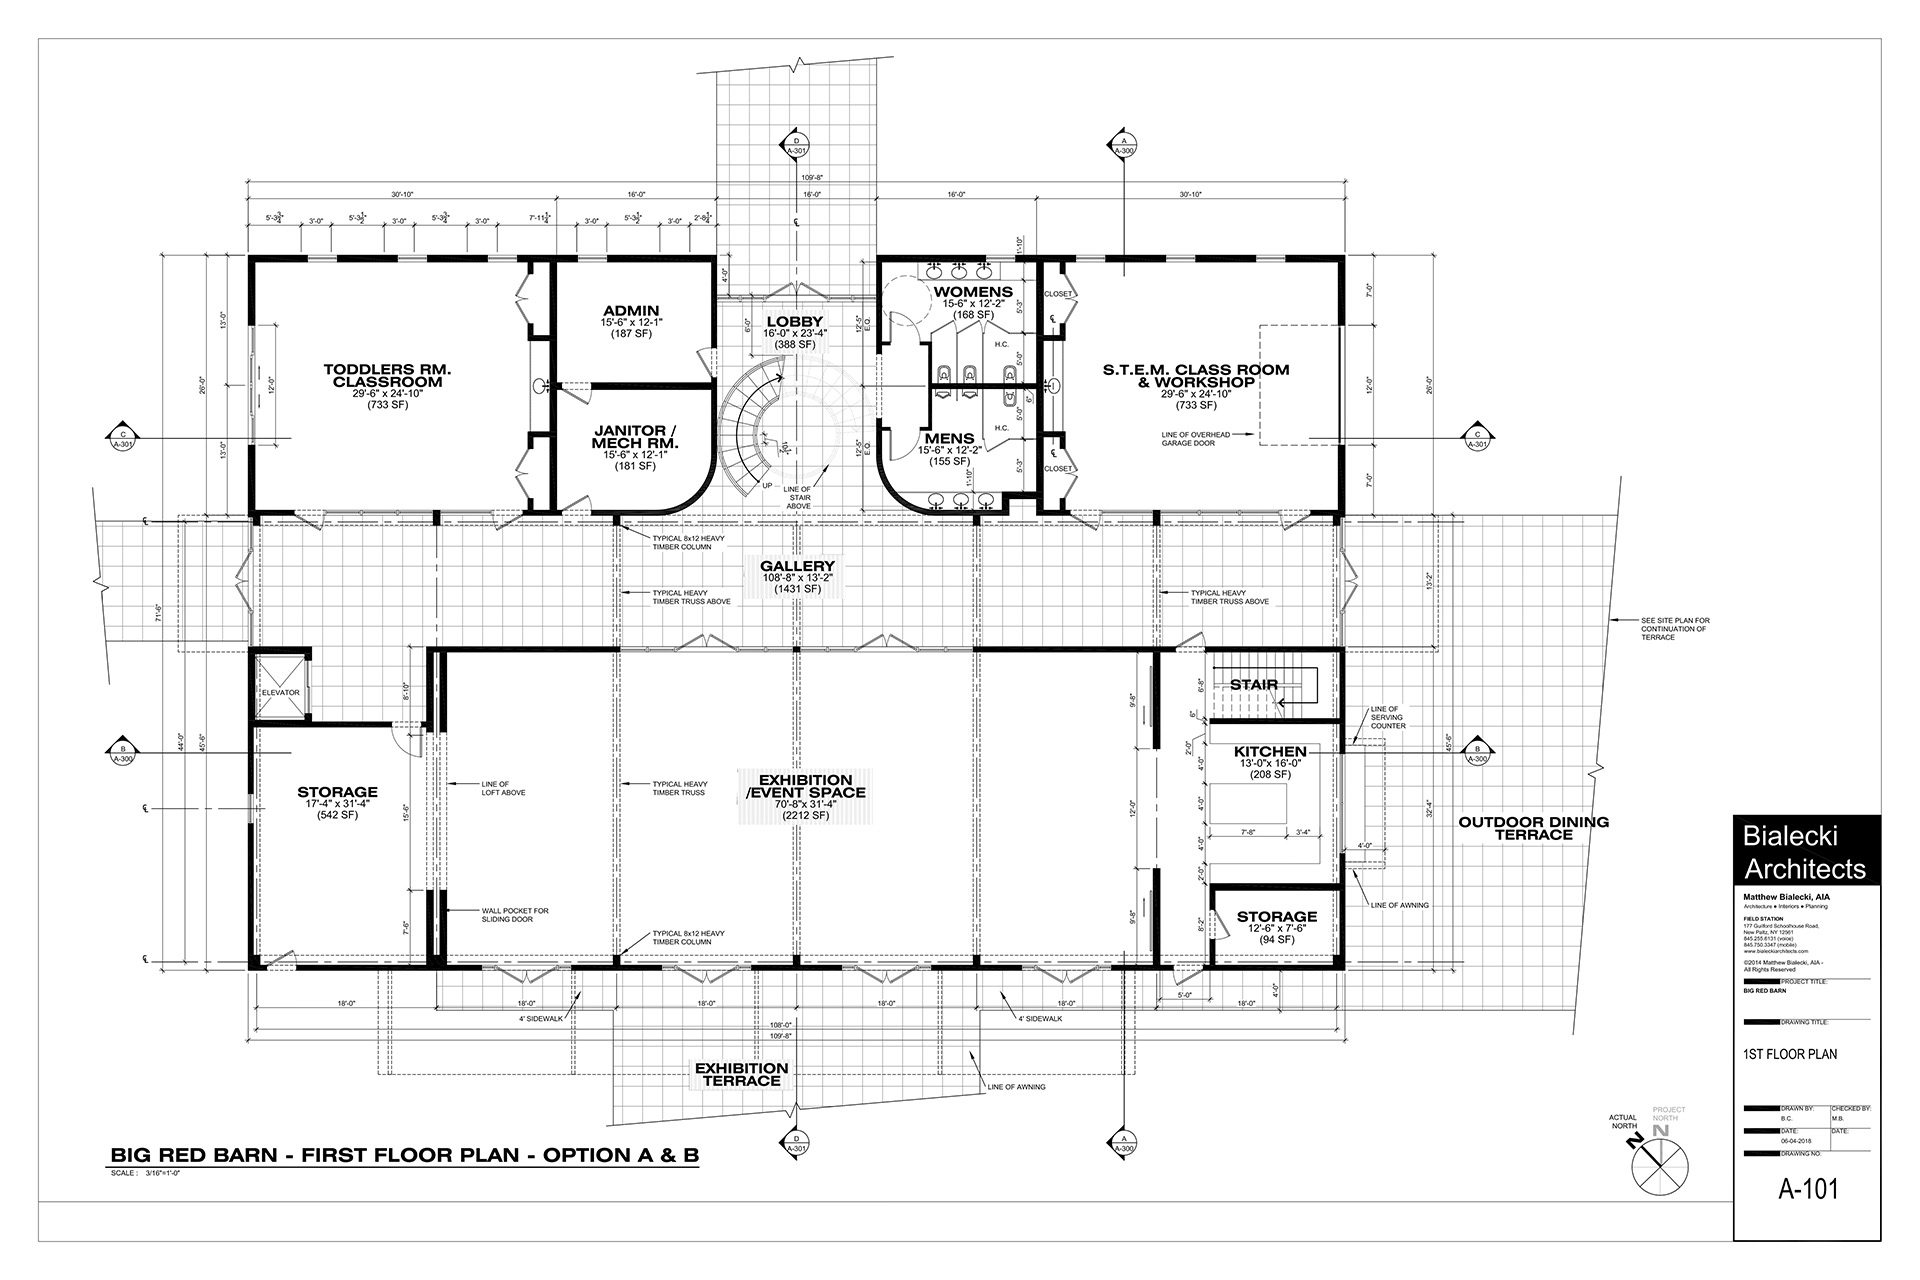 Big Red Barn - Floor Plan - 1st Floor